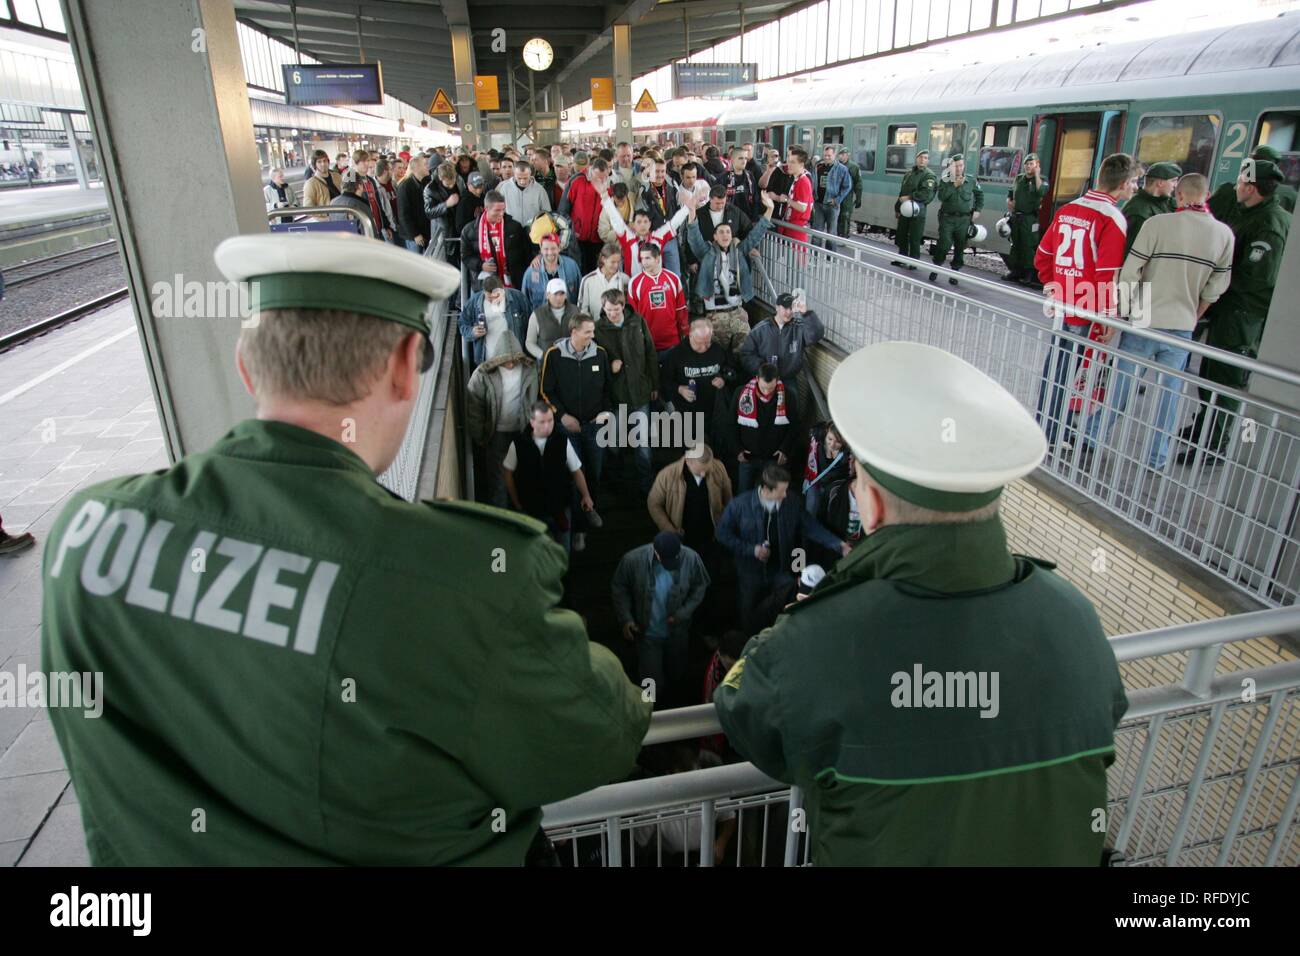 Operación policial en un partido de fútbol, Essen, Alemania Foto de stock